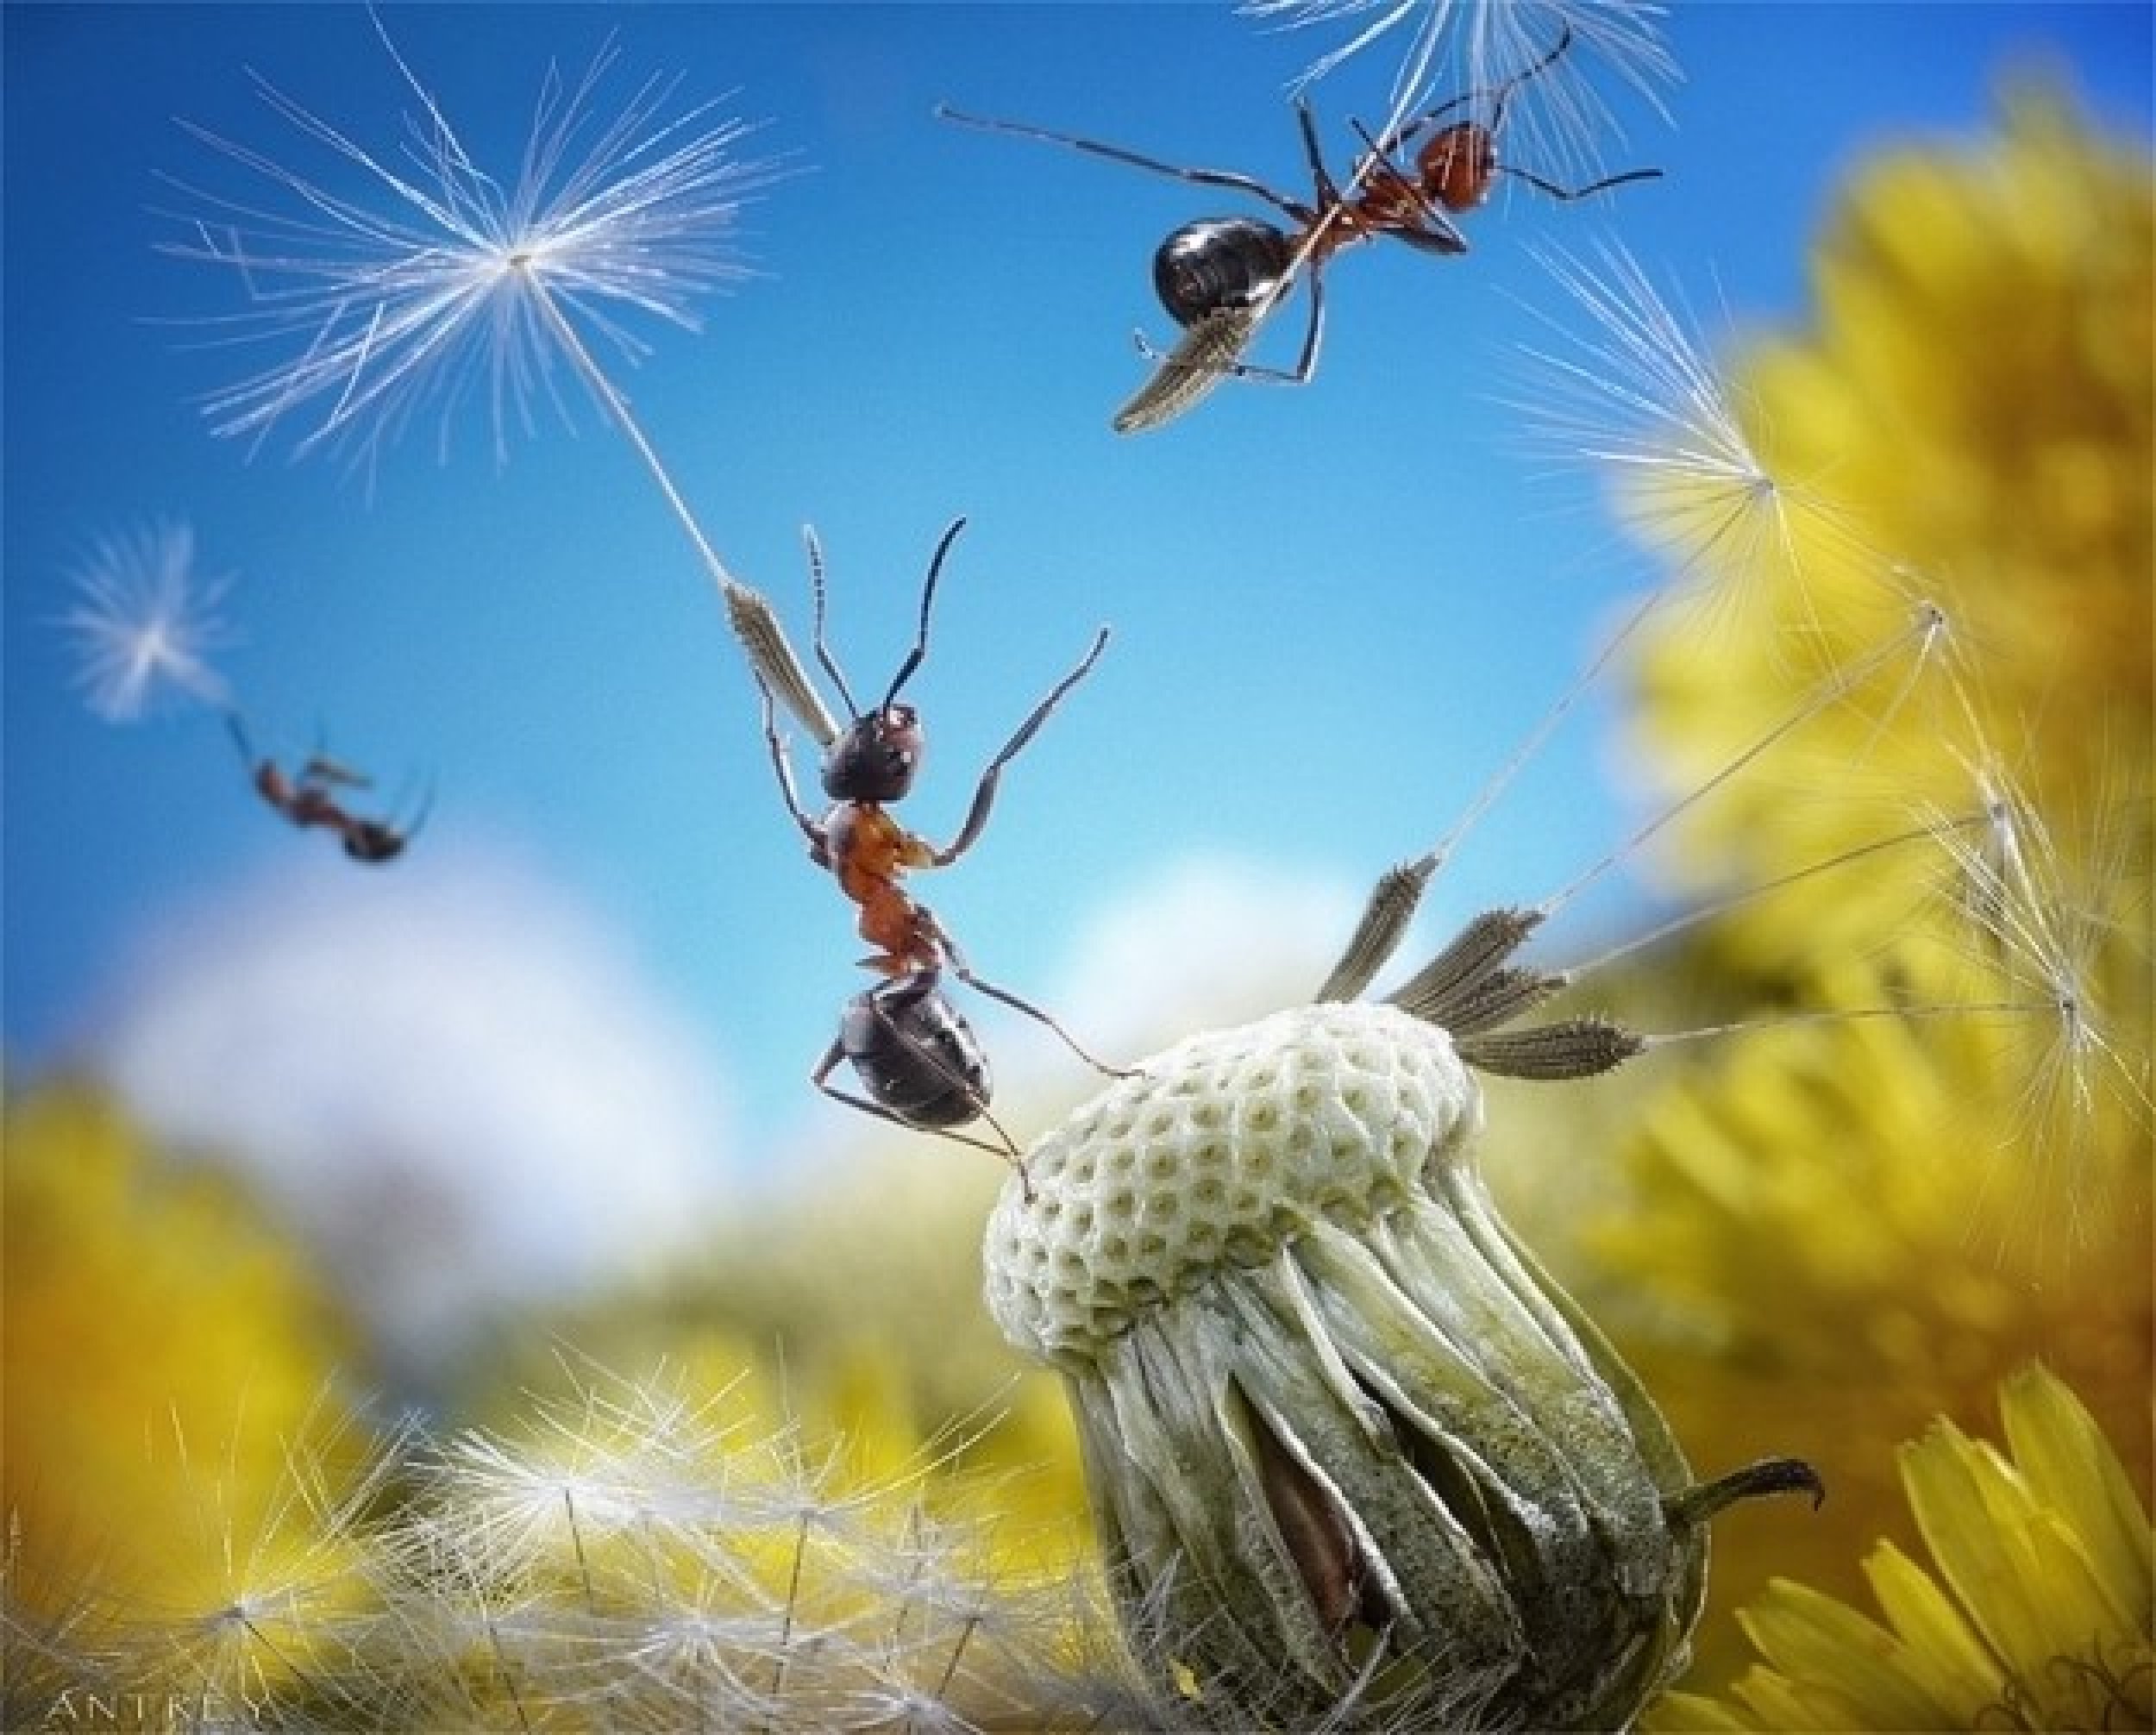 Andrey Pavlovs Amazing Ant Photography